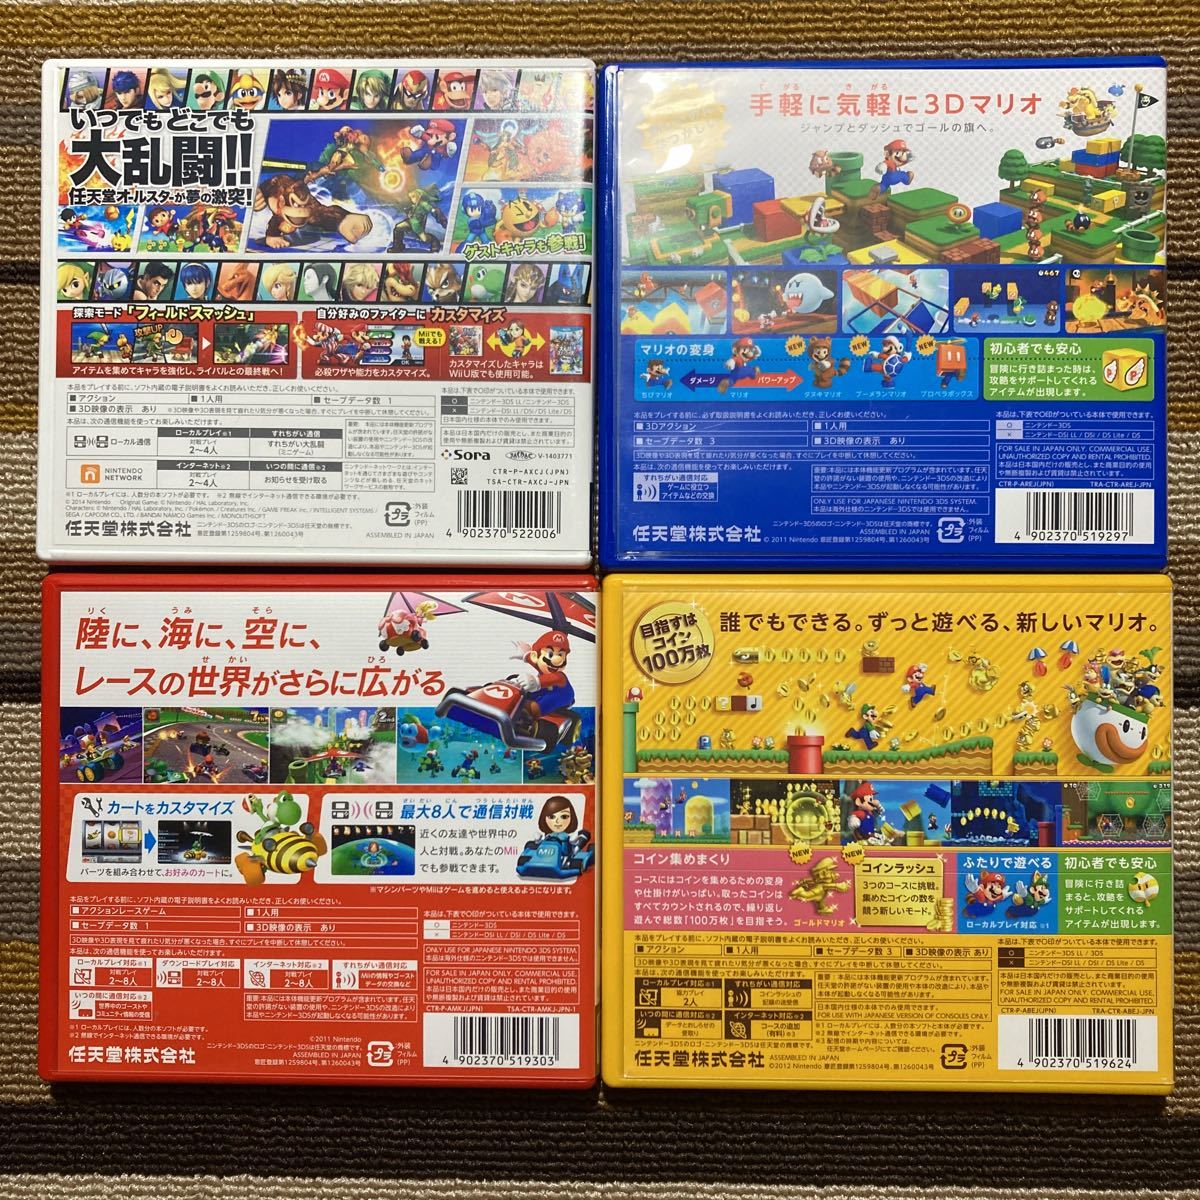 3DS 大乱闘スマッシュブラザーズ スーパーマリオ3Dランド マリオカート7 ニュースーパーマリオブラザーズ2 